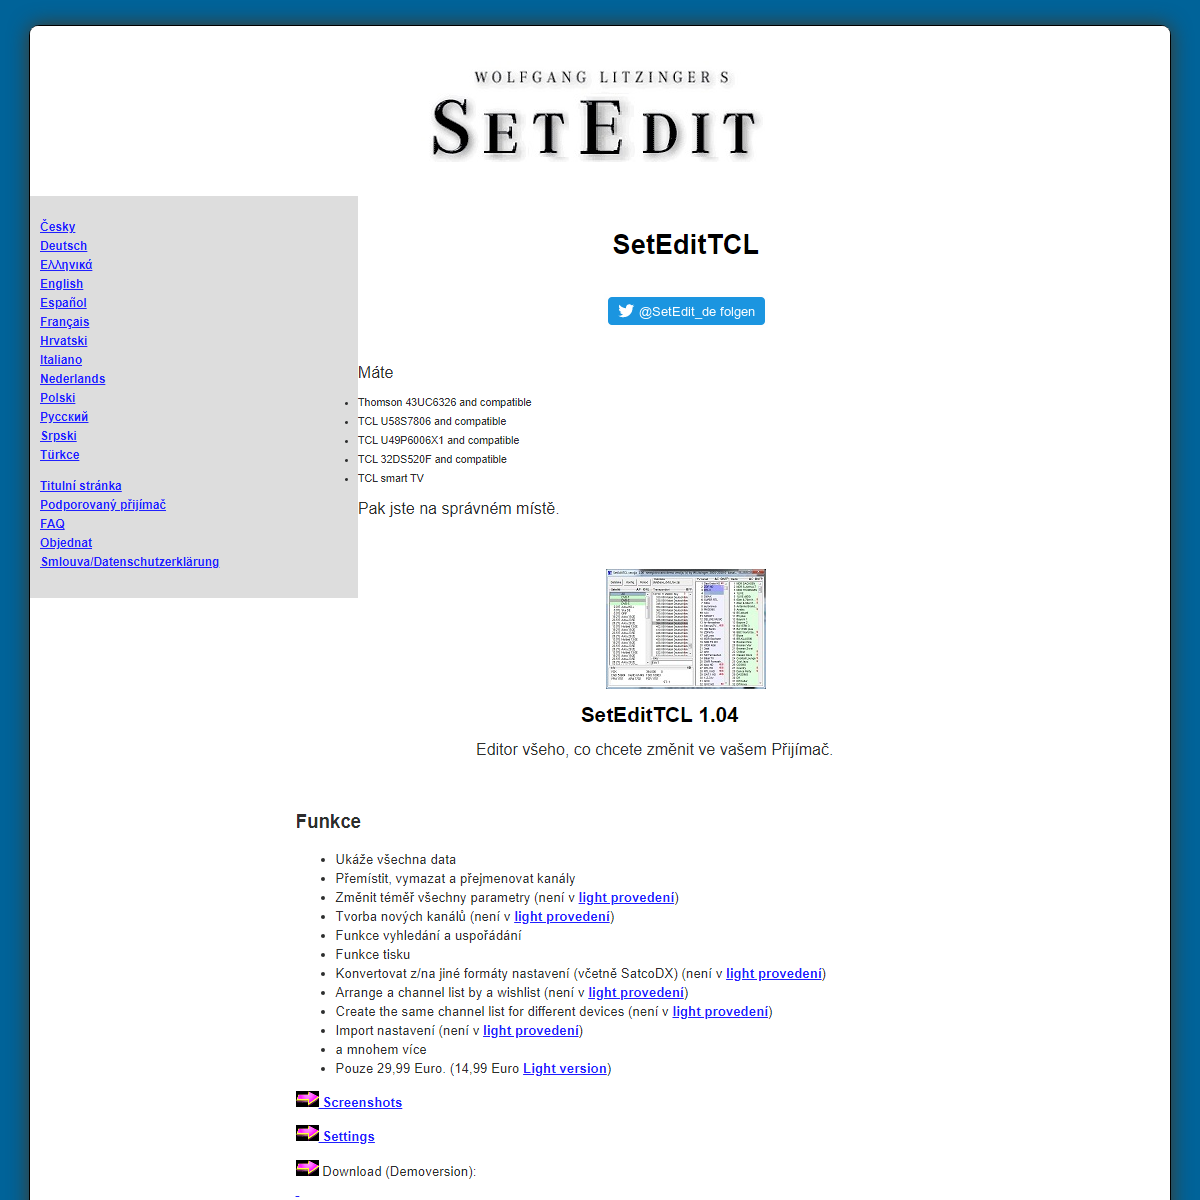 A complete backup of https://www.setedit.de/SetEdit.php?spr=10&Editor=175